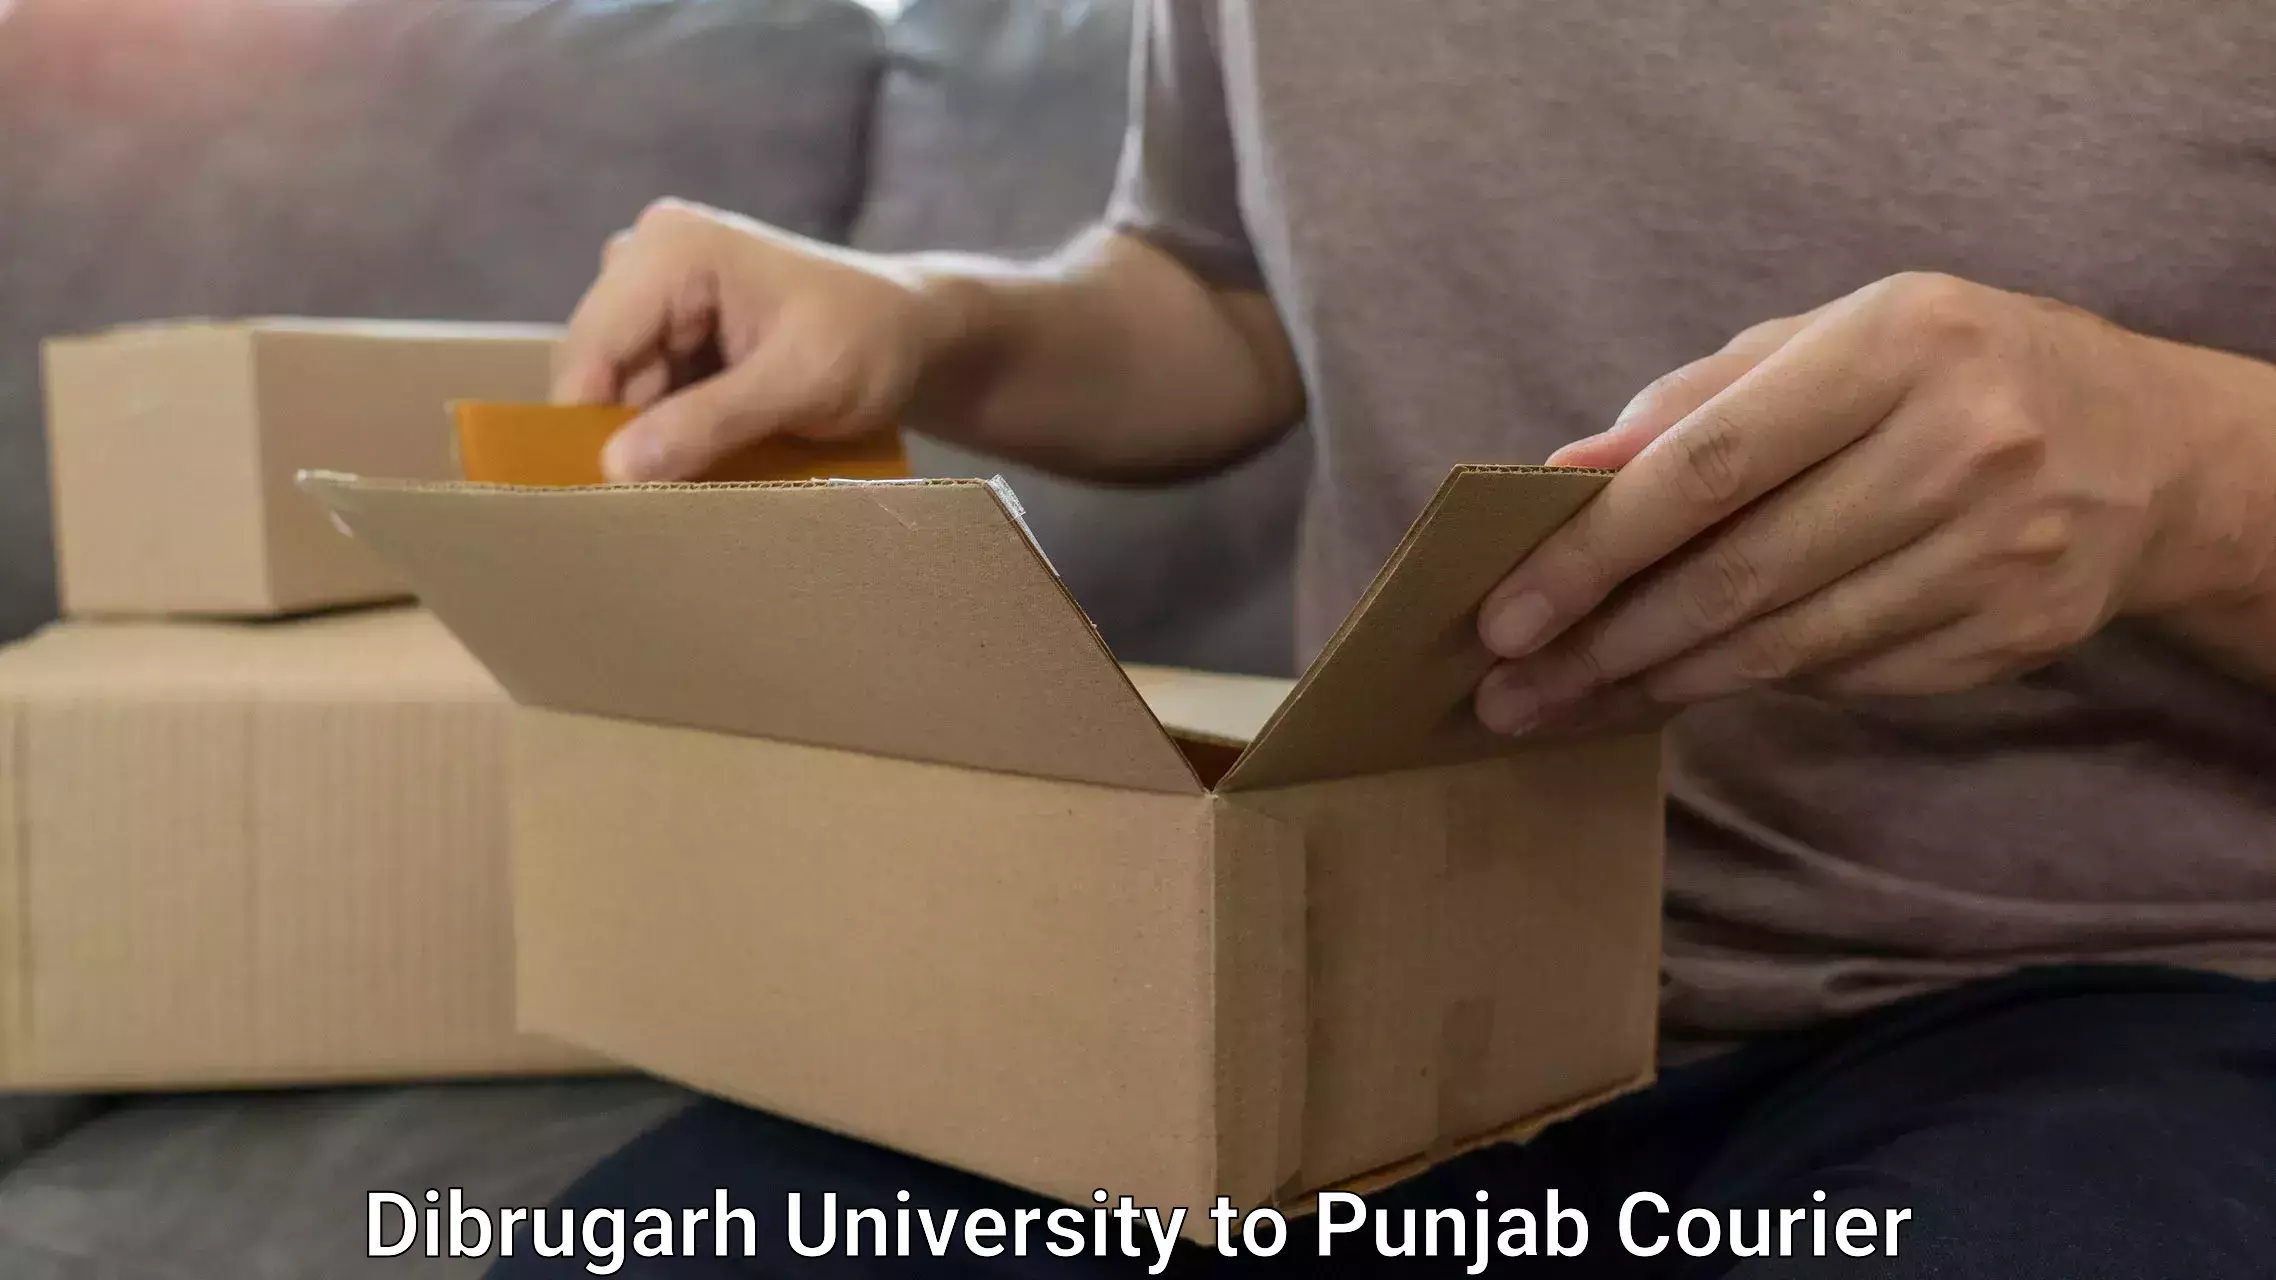 Luggage transit service Dibrugarh University to Dinanagar